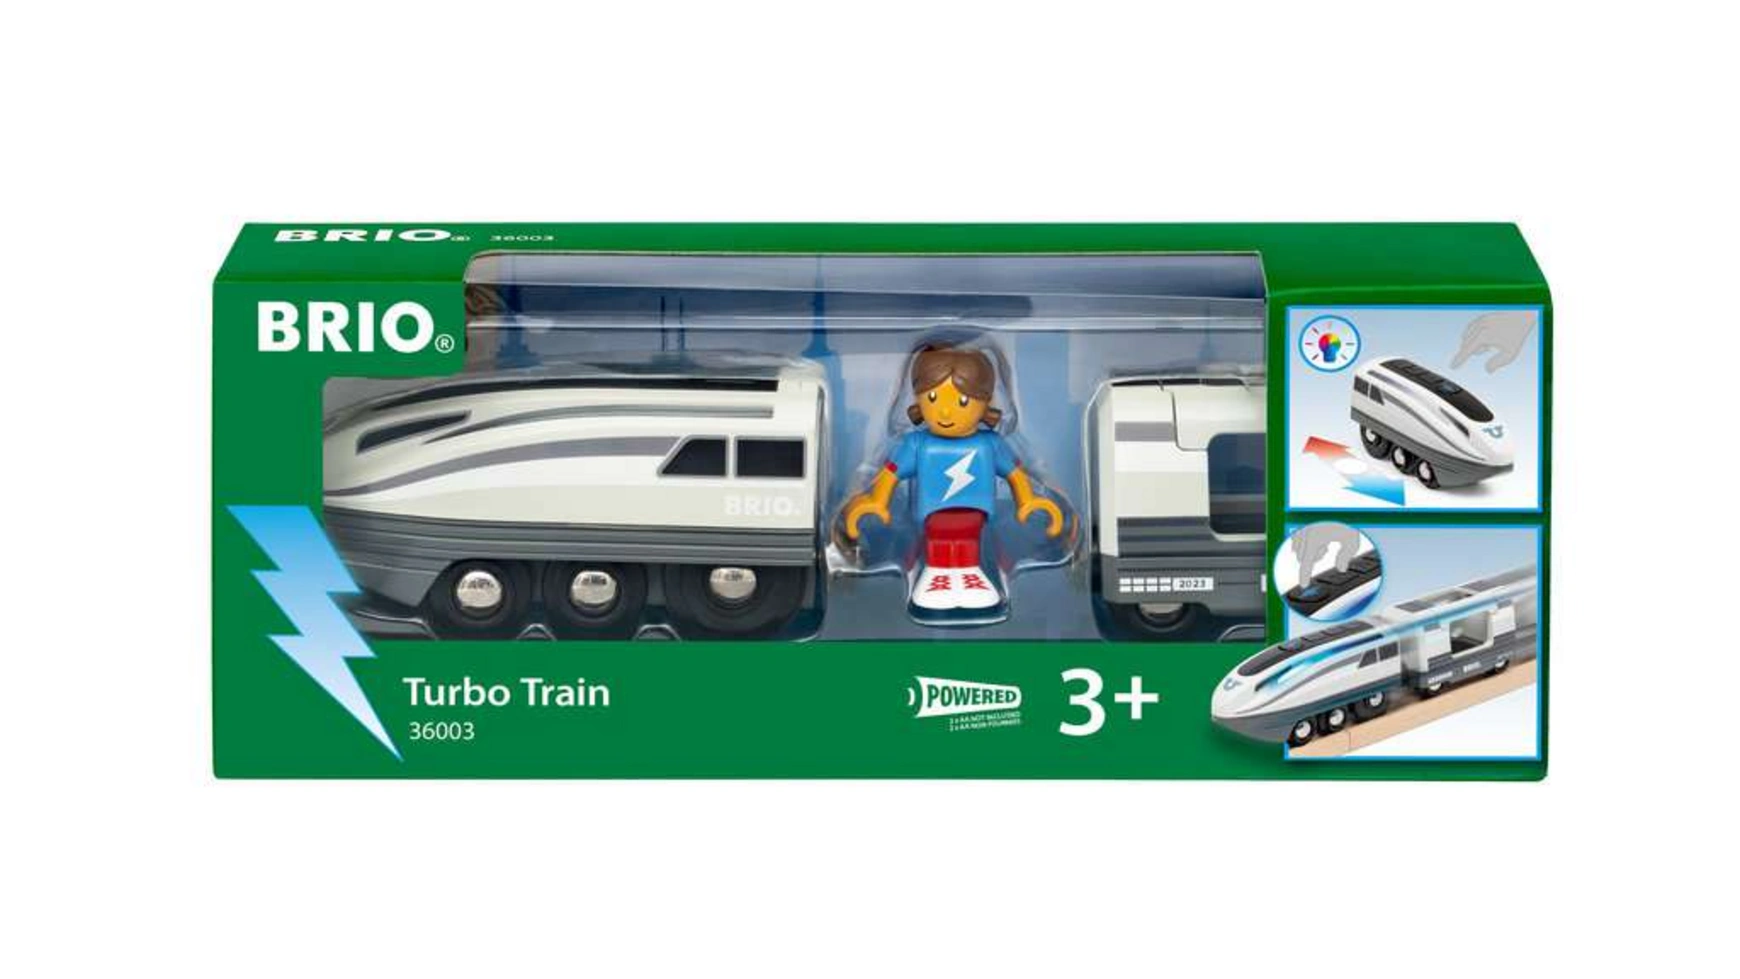 Brio Bahn Turbo Train Игрушечный поезд на батарейках для детей от 3 лет и старше детская головоломка электрический игрушечный поезд интерактивный музыкальный автомобиль подарок светящийся поезд для игрушек thomas